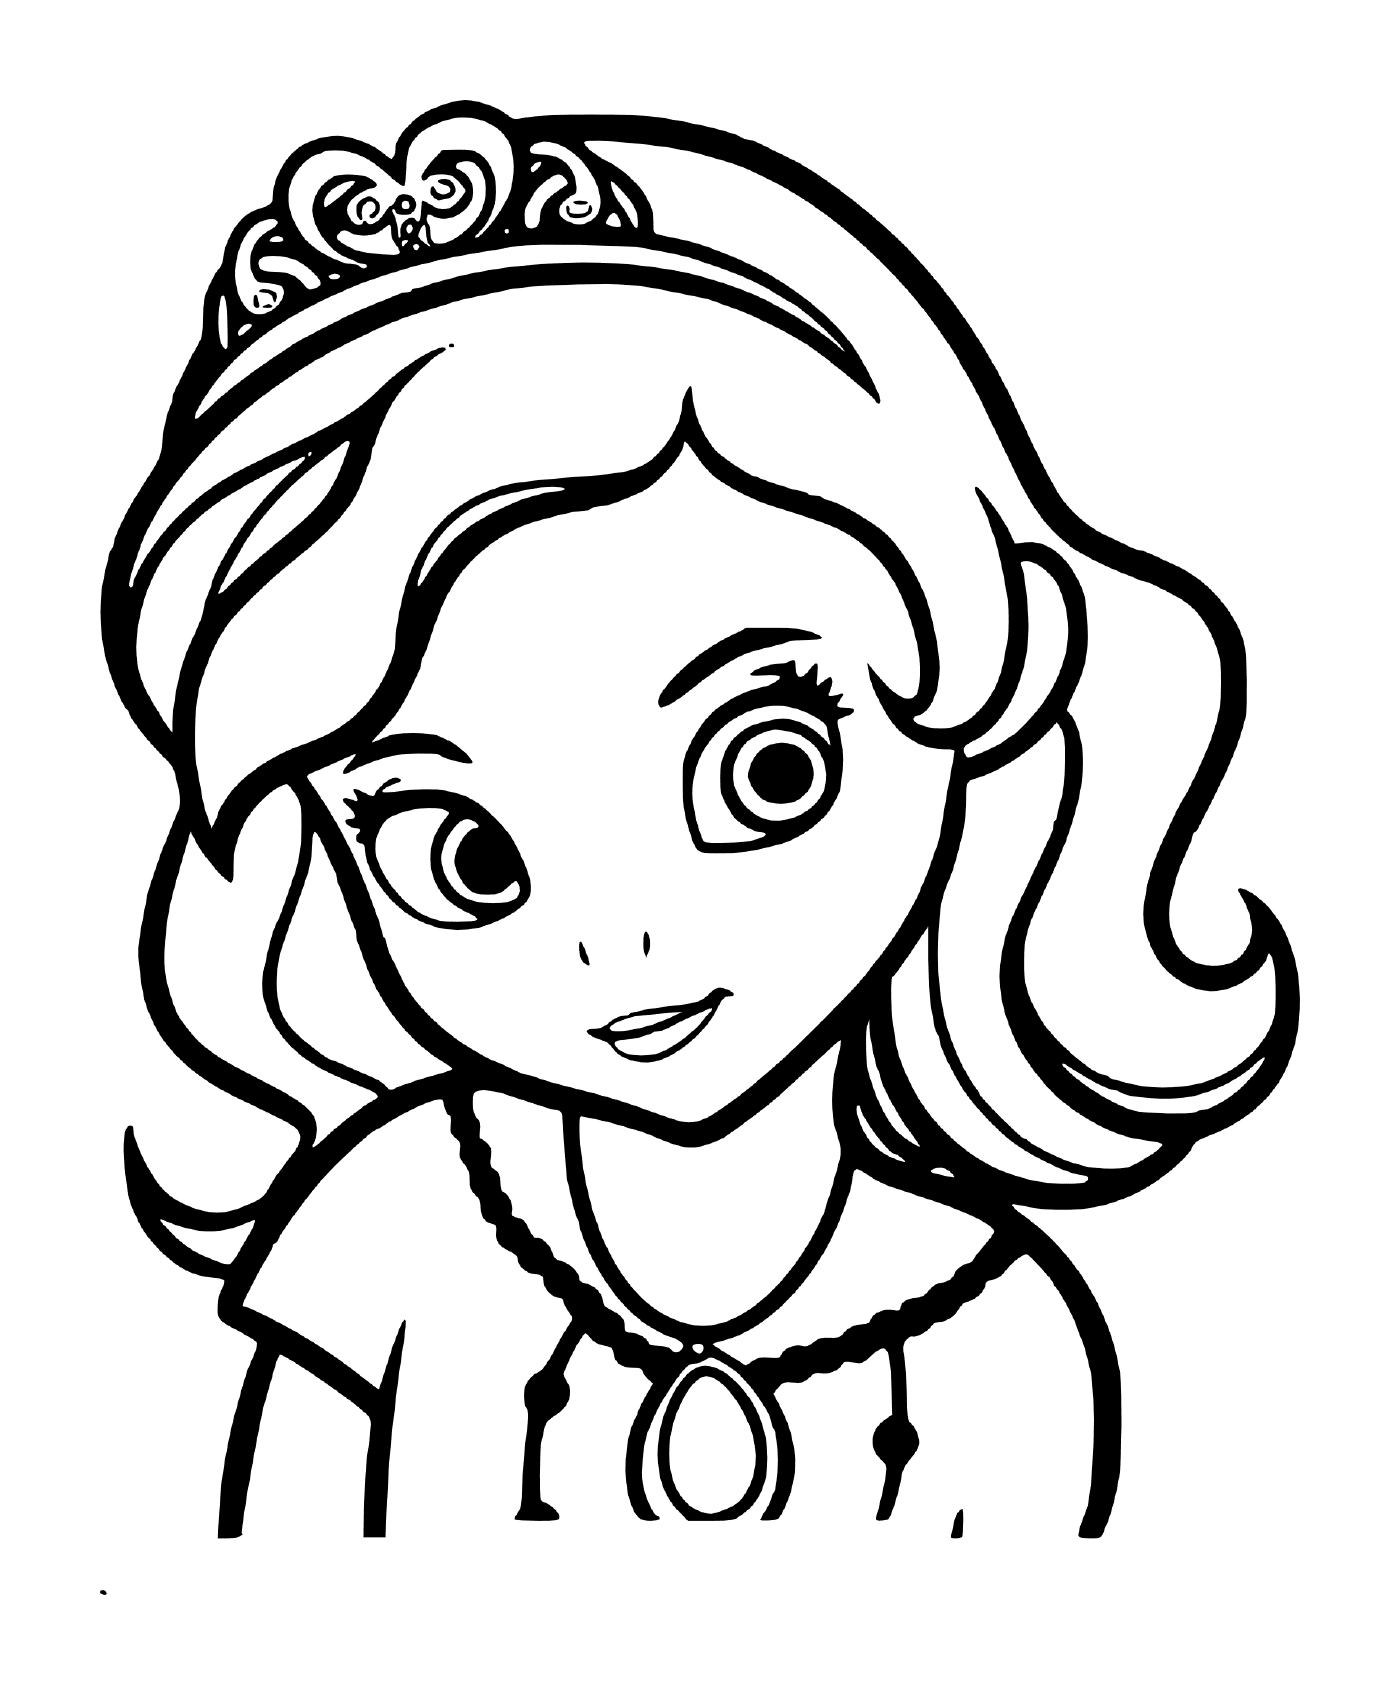   Princesse Sofia de face, portrait visage 